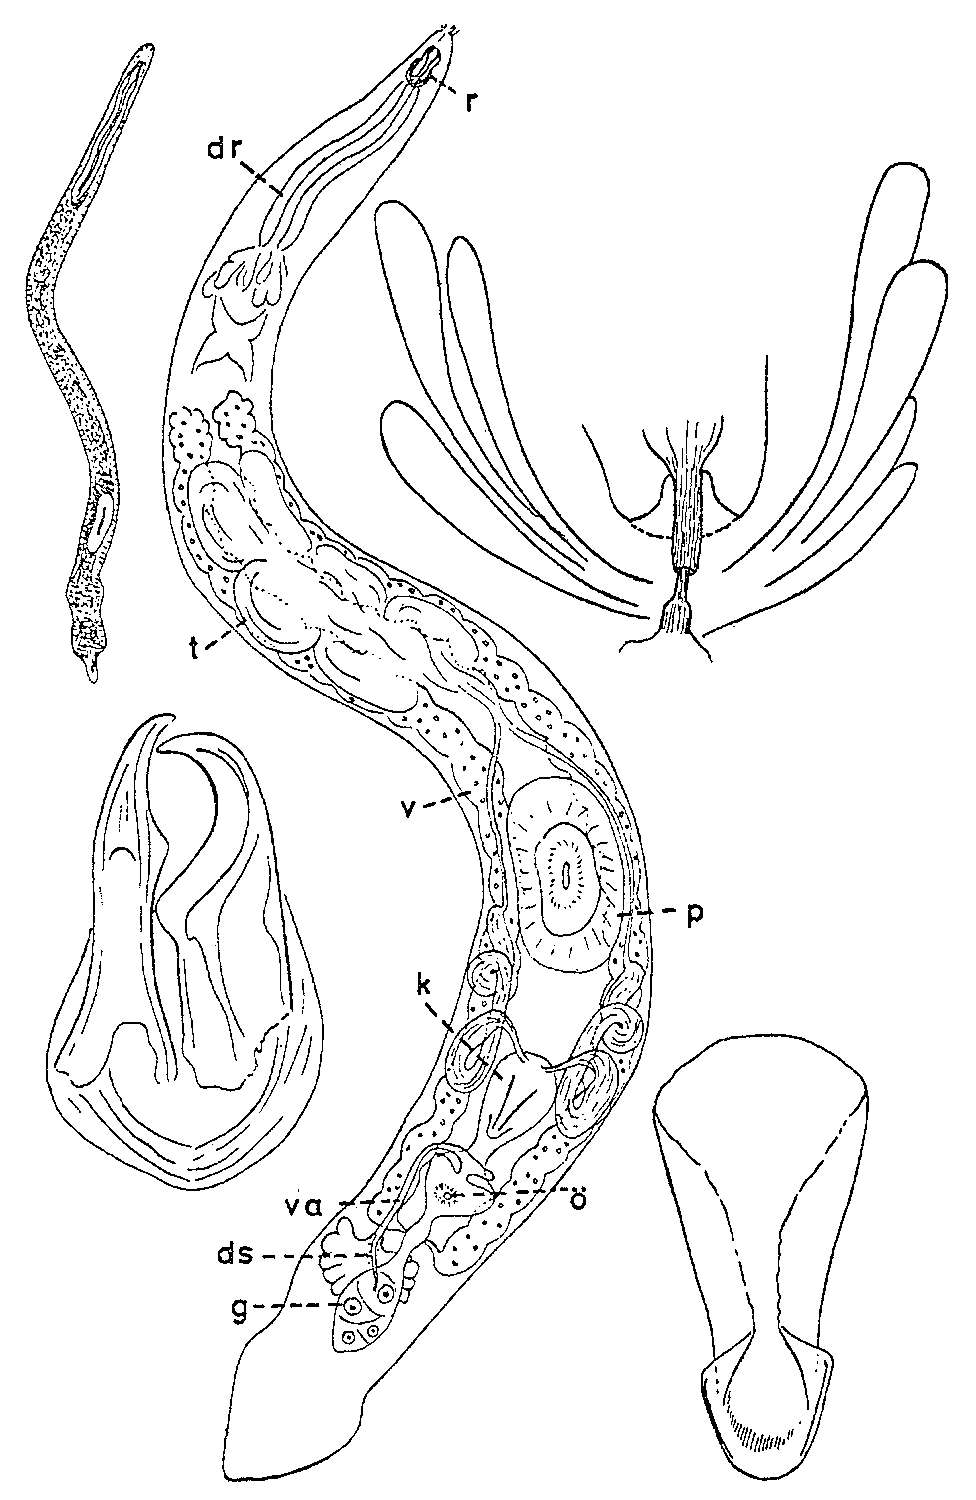 Image of Diascorhynchus serpens Karling 1949